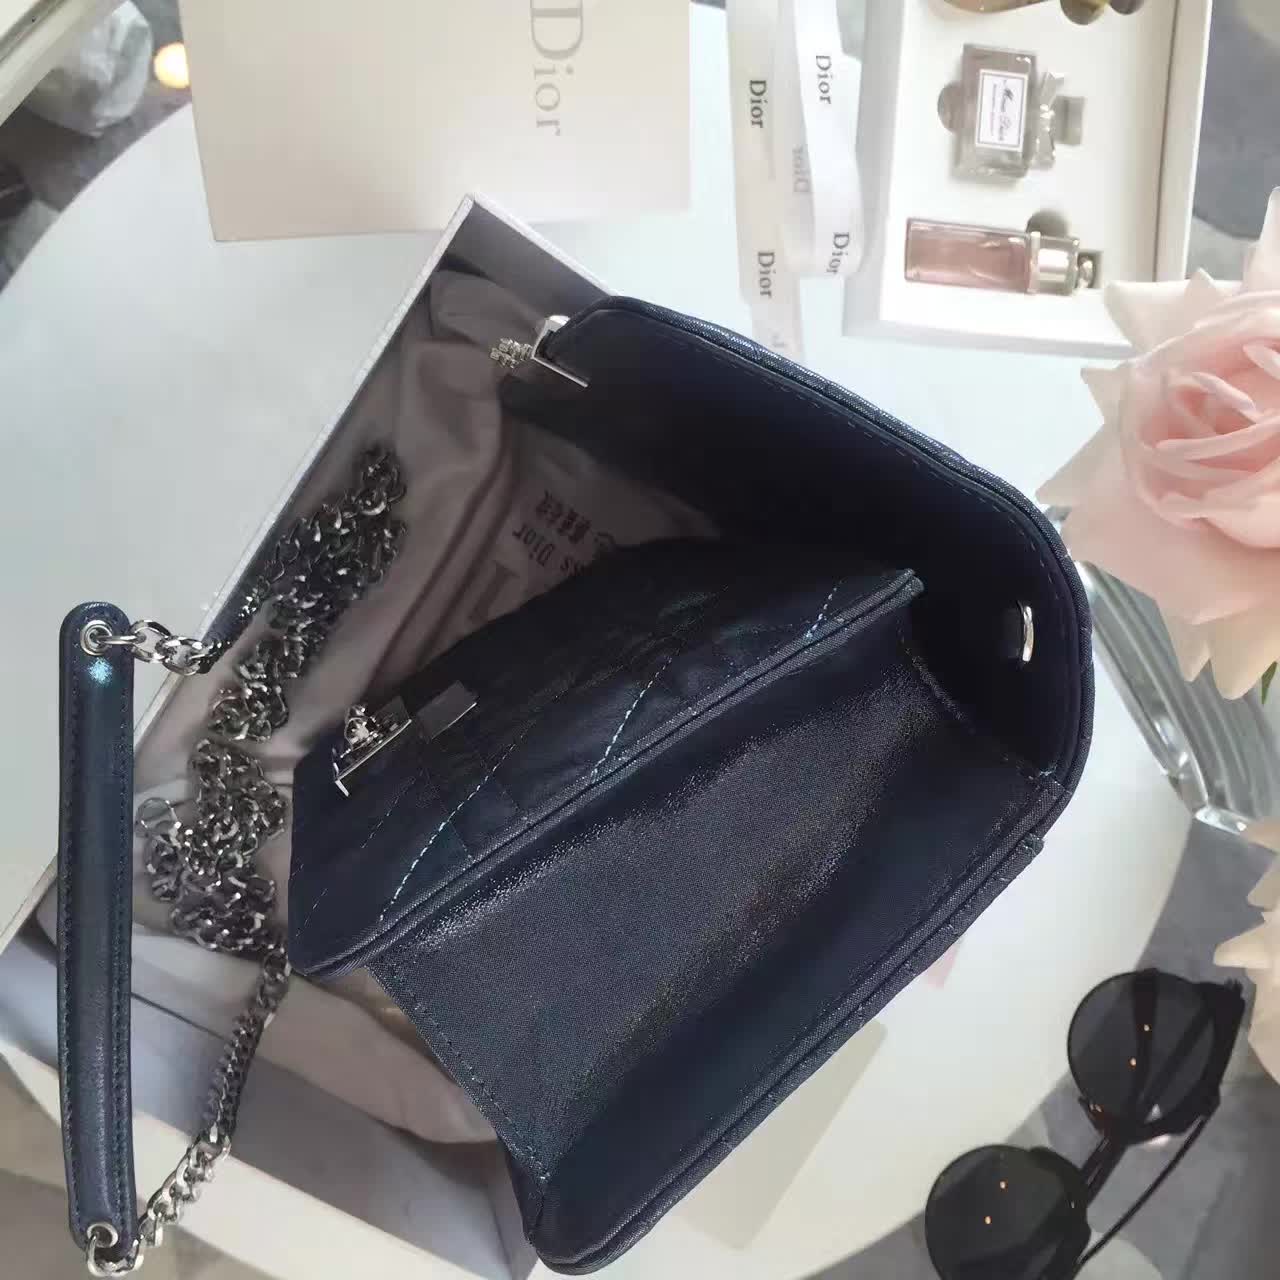 厂家直销 迪奥新款女包 Miss Dior布纹系列链条单肩包 深蓝色